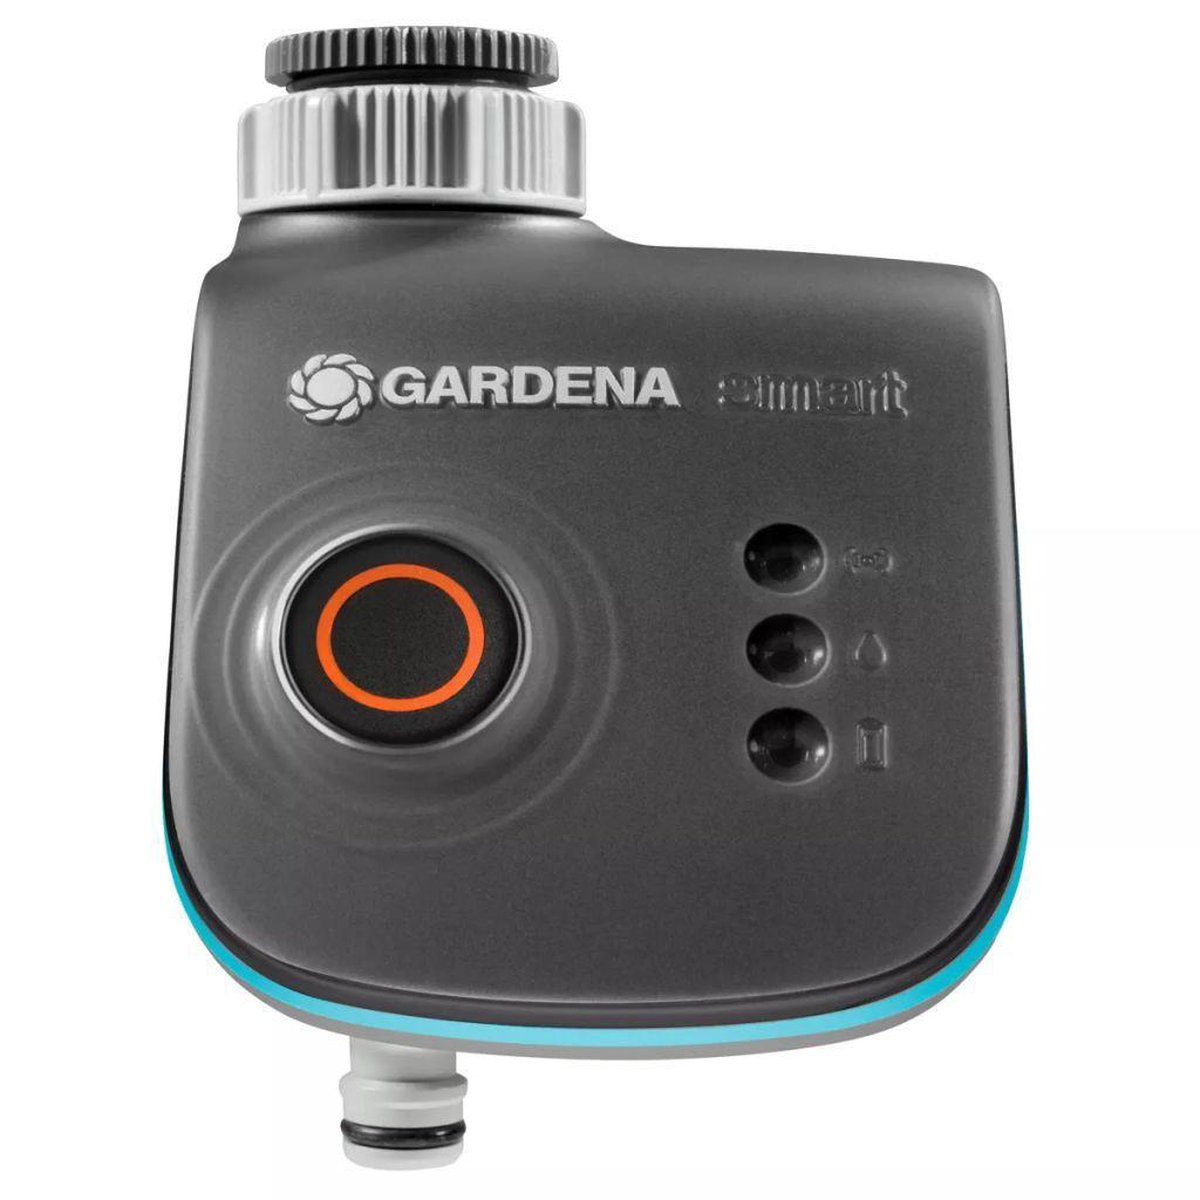 GARDENA - Smart Water Control Besproeiingscomputer - Besproeiingsduur 1min tot 10u - GARDENA